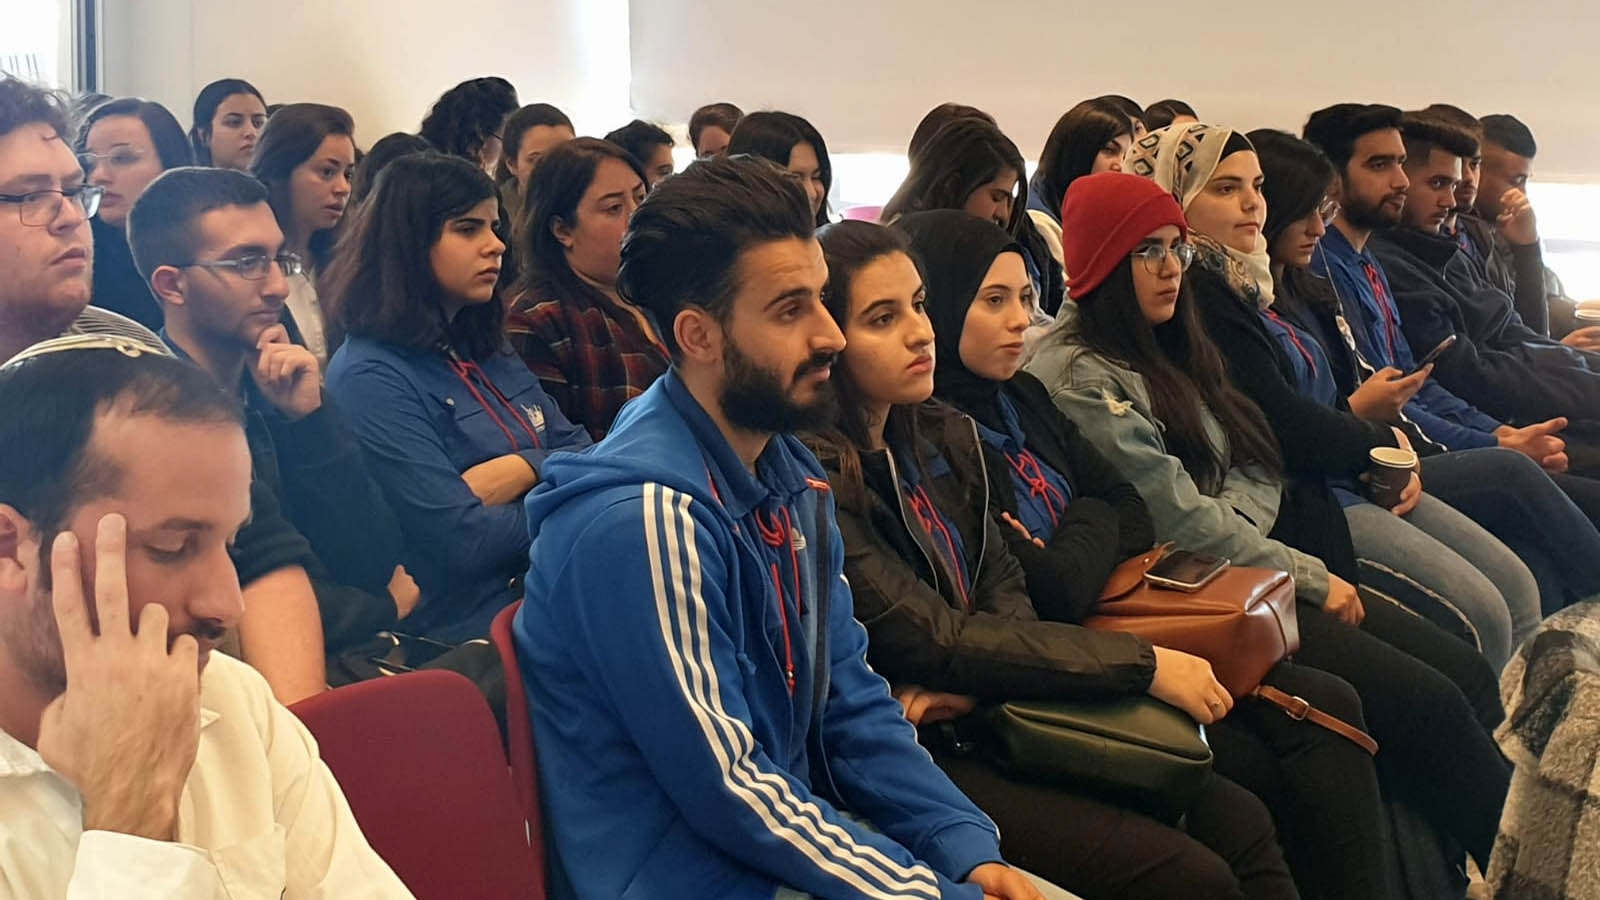 وقد دُعي المشاركون في مؤتمر المتطوعين للخدمة الوطنية المدنية في ياد فاشيم للاحتفال باليوم العالمي للمحرقة (كل التقدير لـ: المتحدثون باسم يد فاشيم)